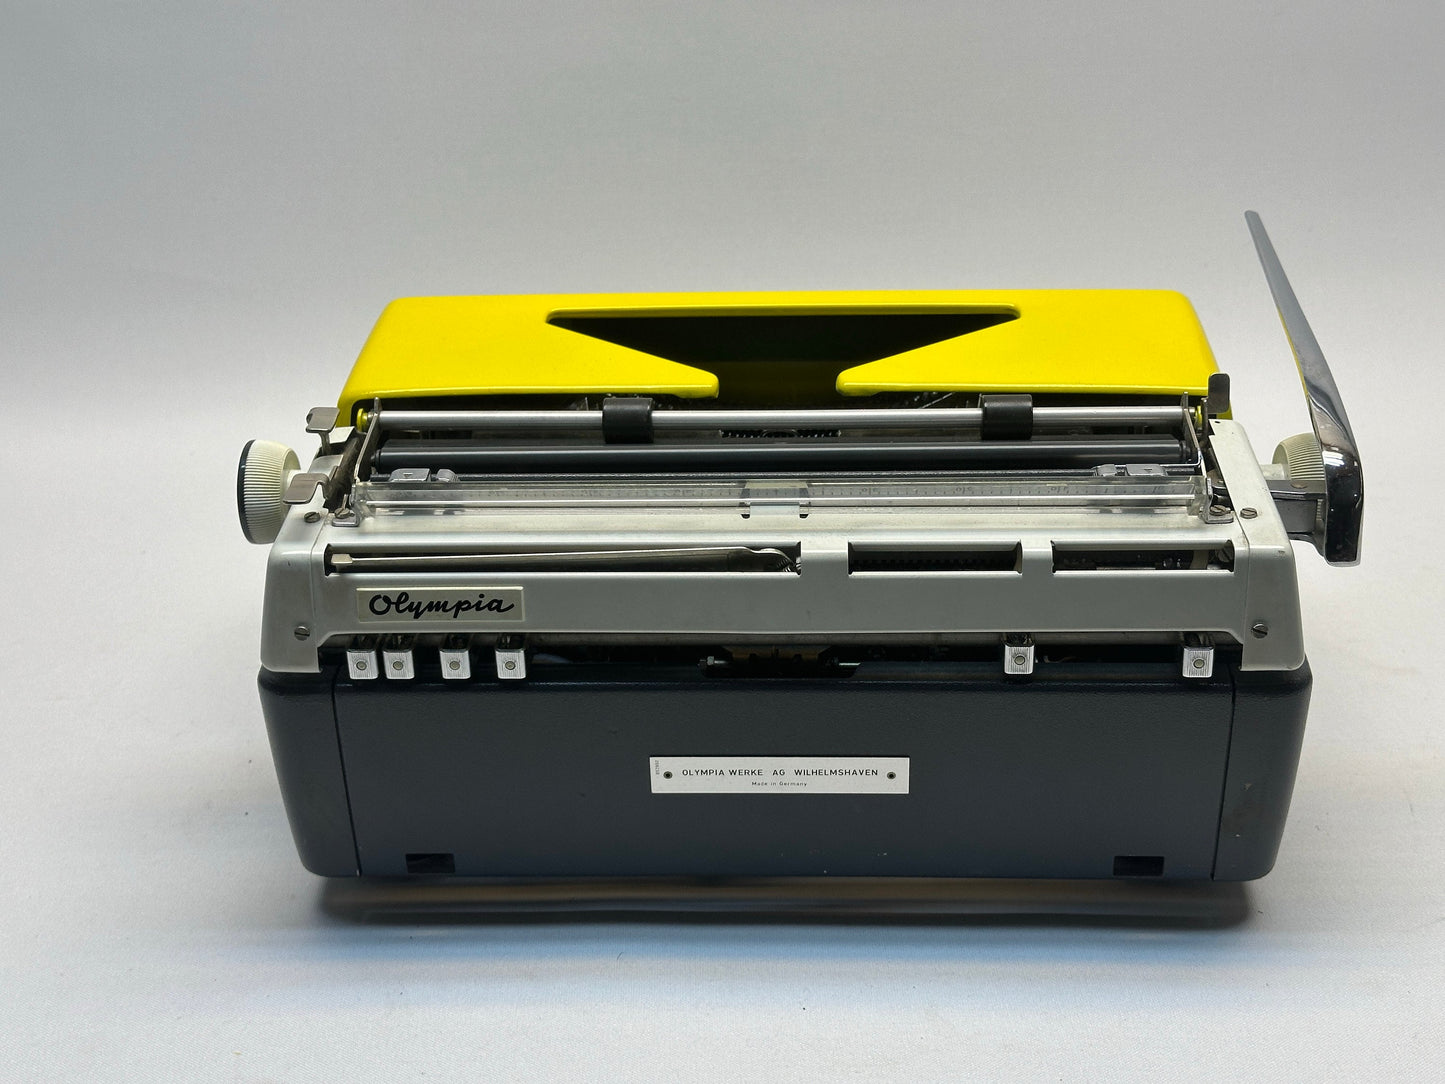 Olympia Monica Typewriter - Yellow Typewriter - QWERTZ Keyboard, Black Keys, Yellow Cover, Antique Manual Typewriter